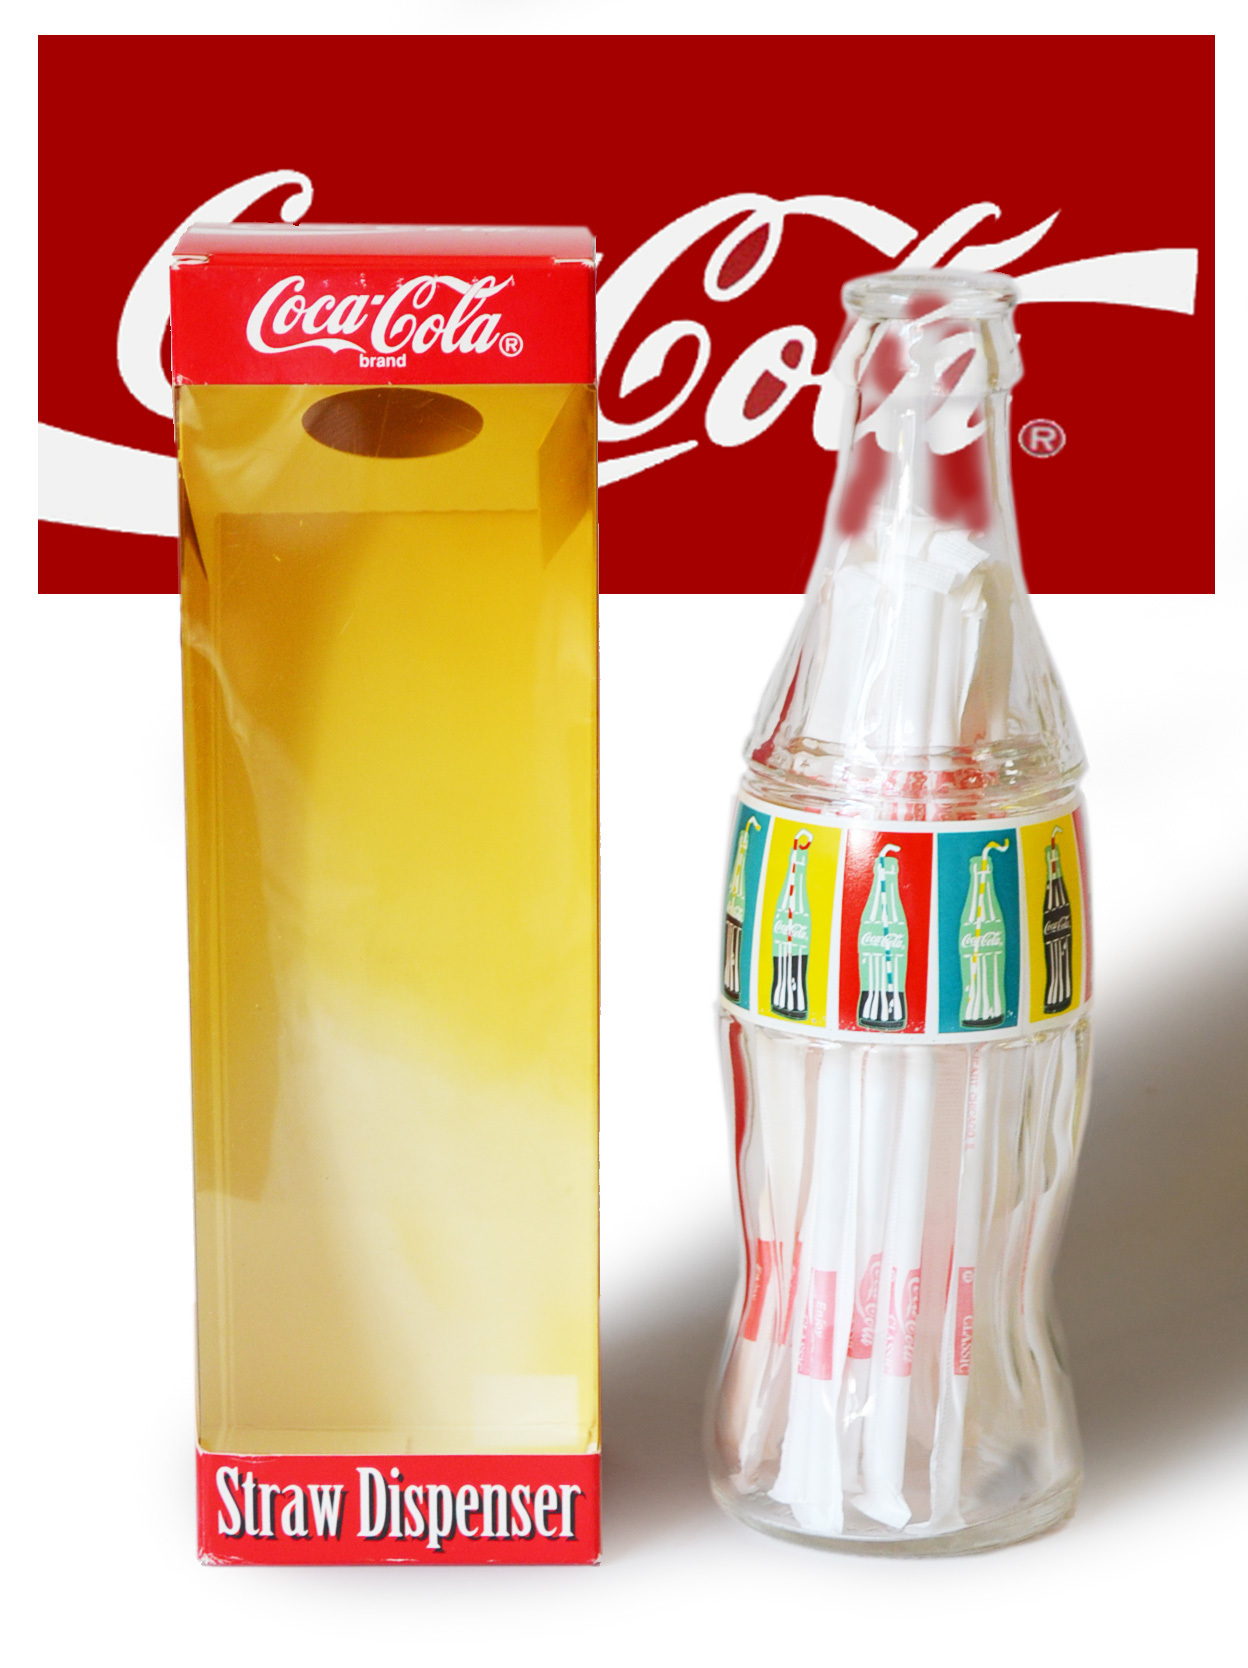 Coca・Cola コカコーラ ガラス製ストローディスペンサー 1995: Cochi